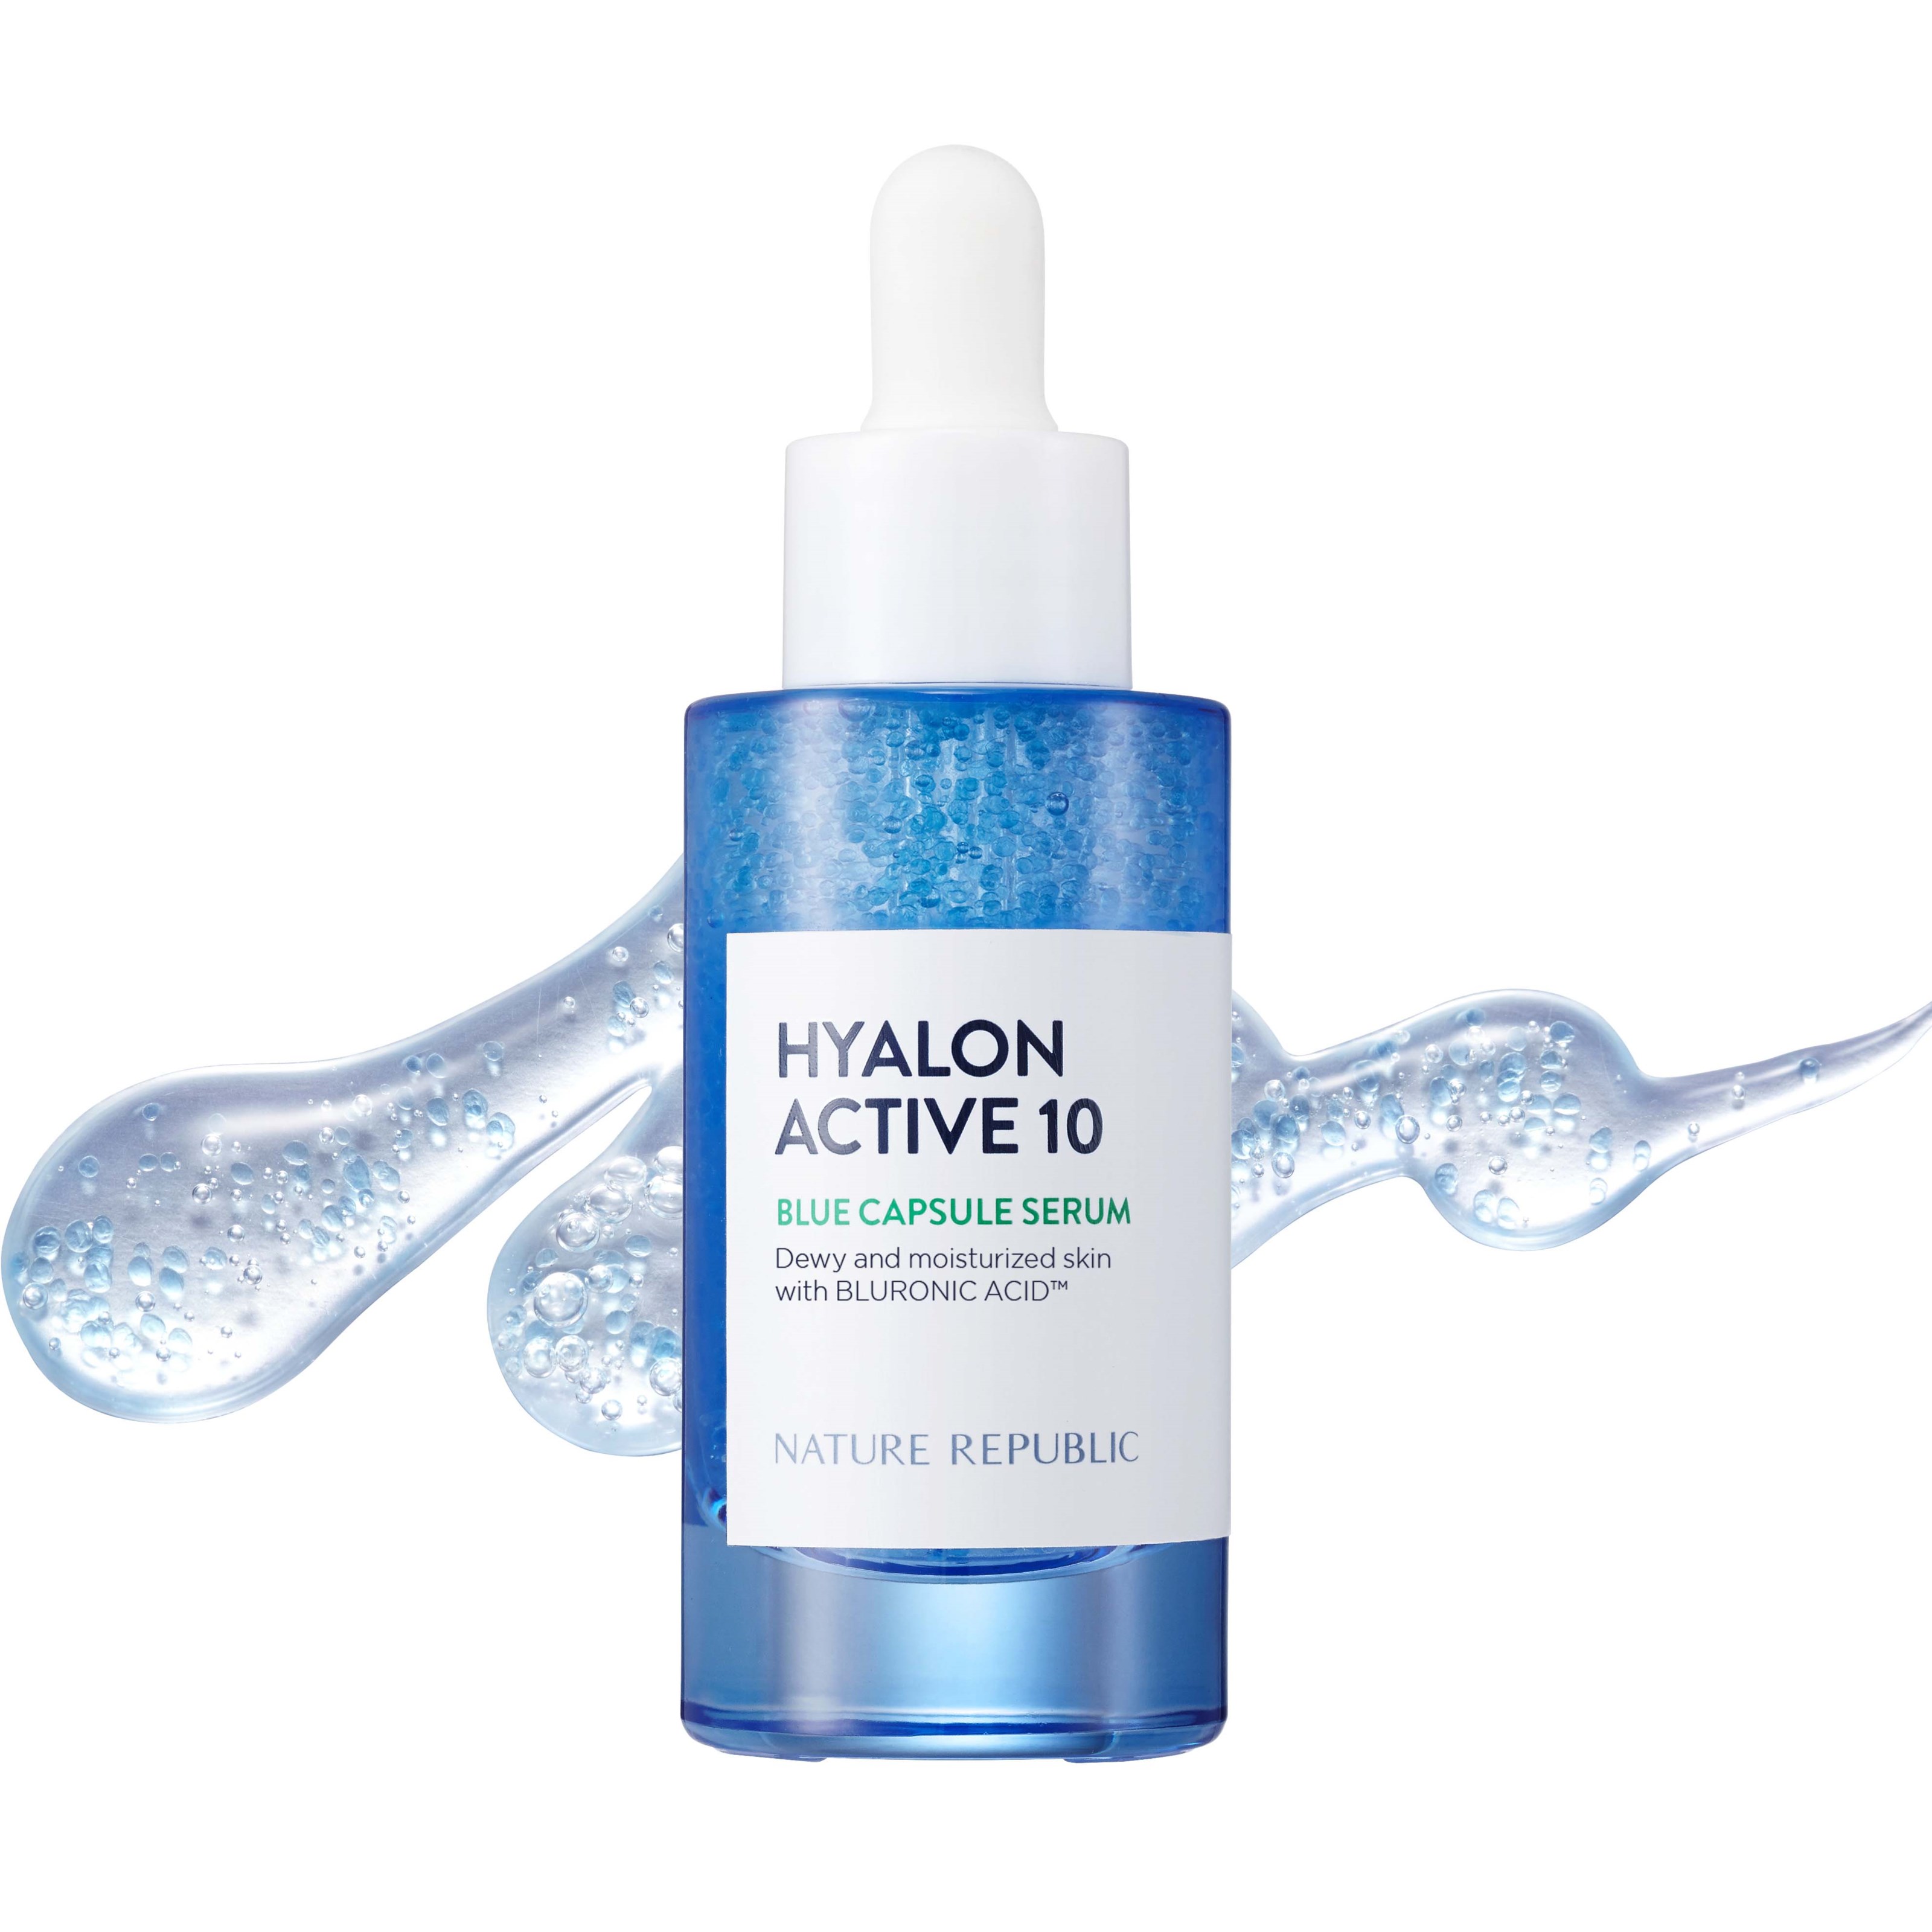 Nature Republic Hyalon Active 10 Blue Capsule Serum 30 ml